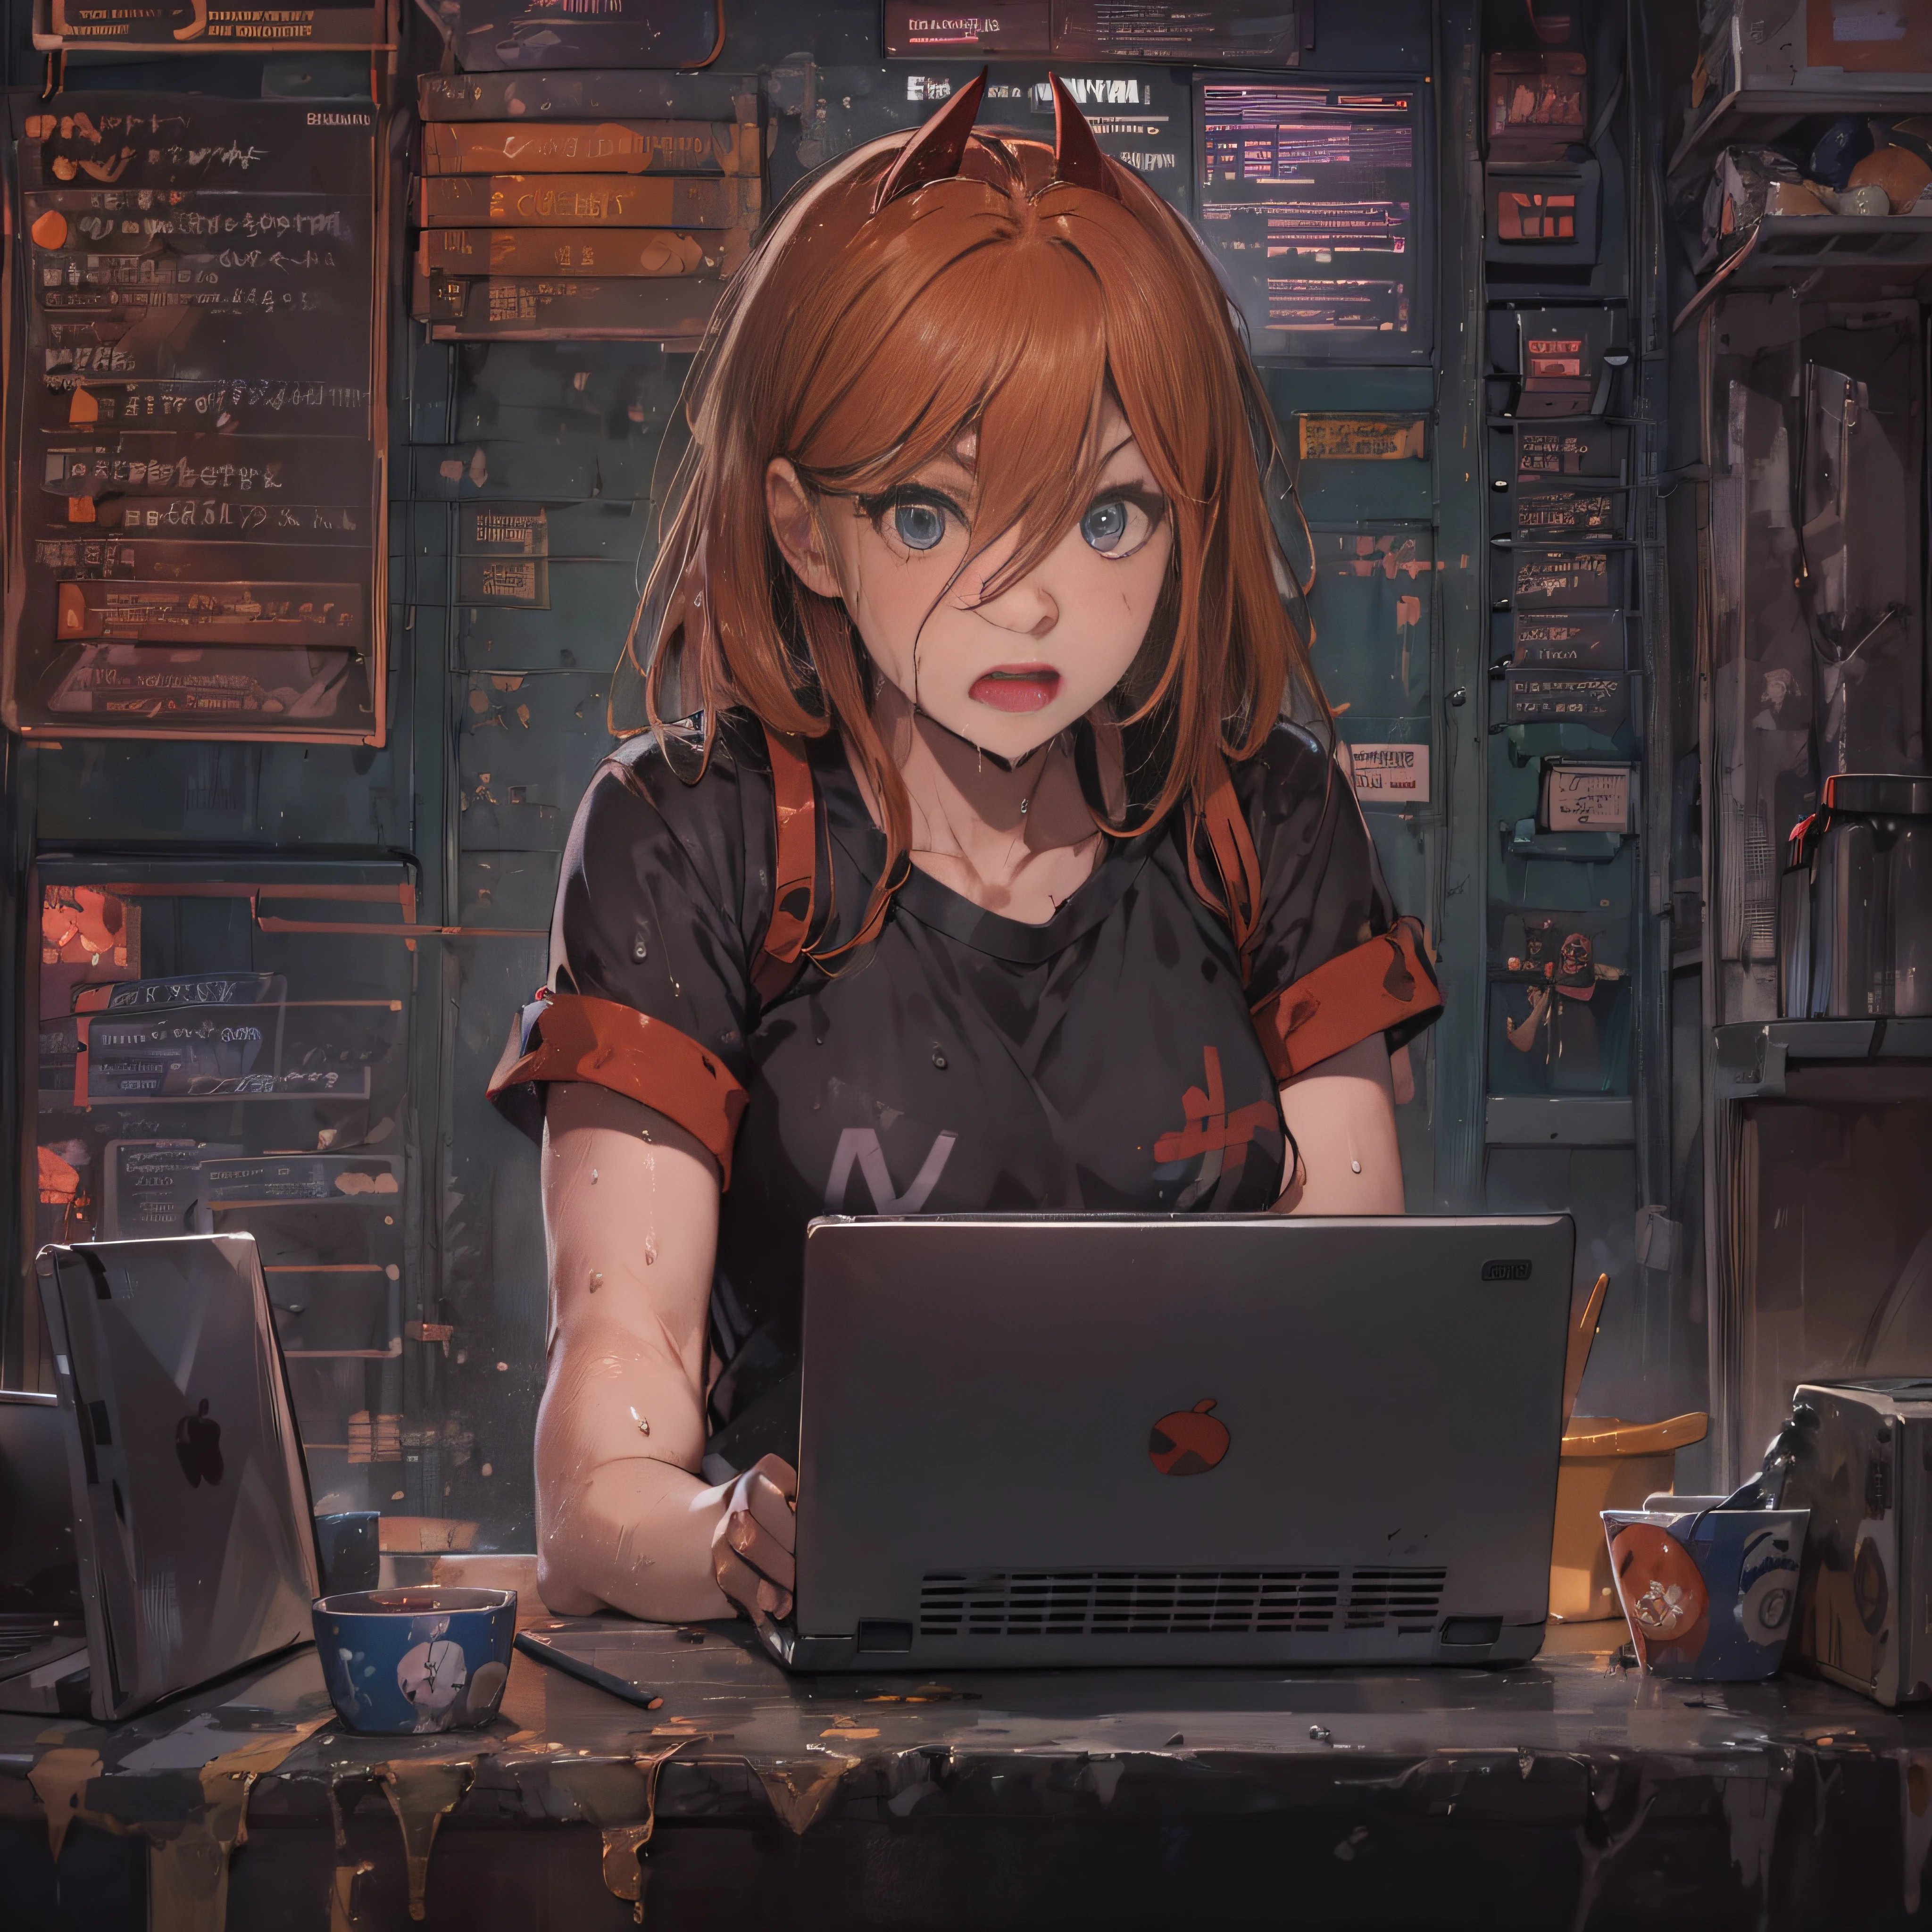 a hacker talking about киберsecurity: рыжие волосы с челкой без копора, Черная рубашка, Черные трусики, Влажный, вечно, кибер, ноутбук.